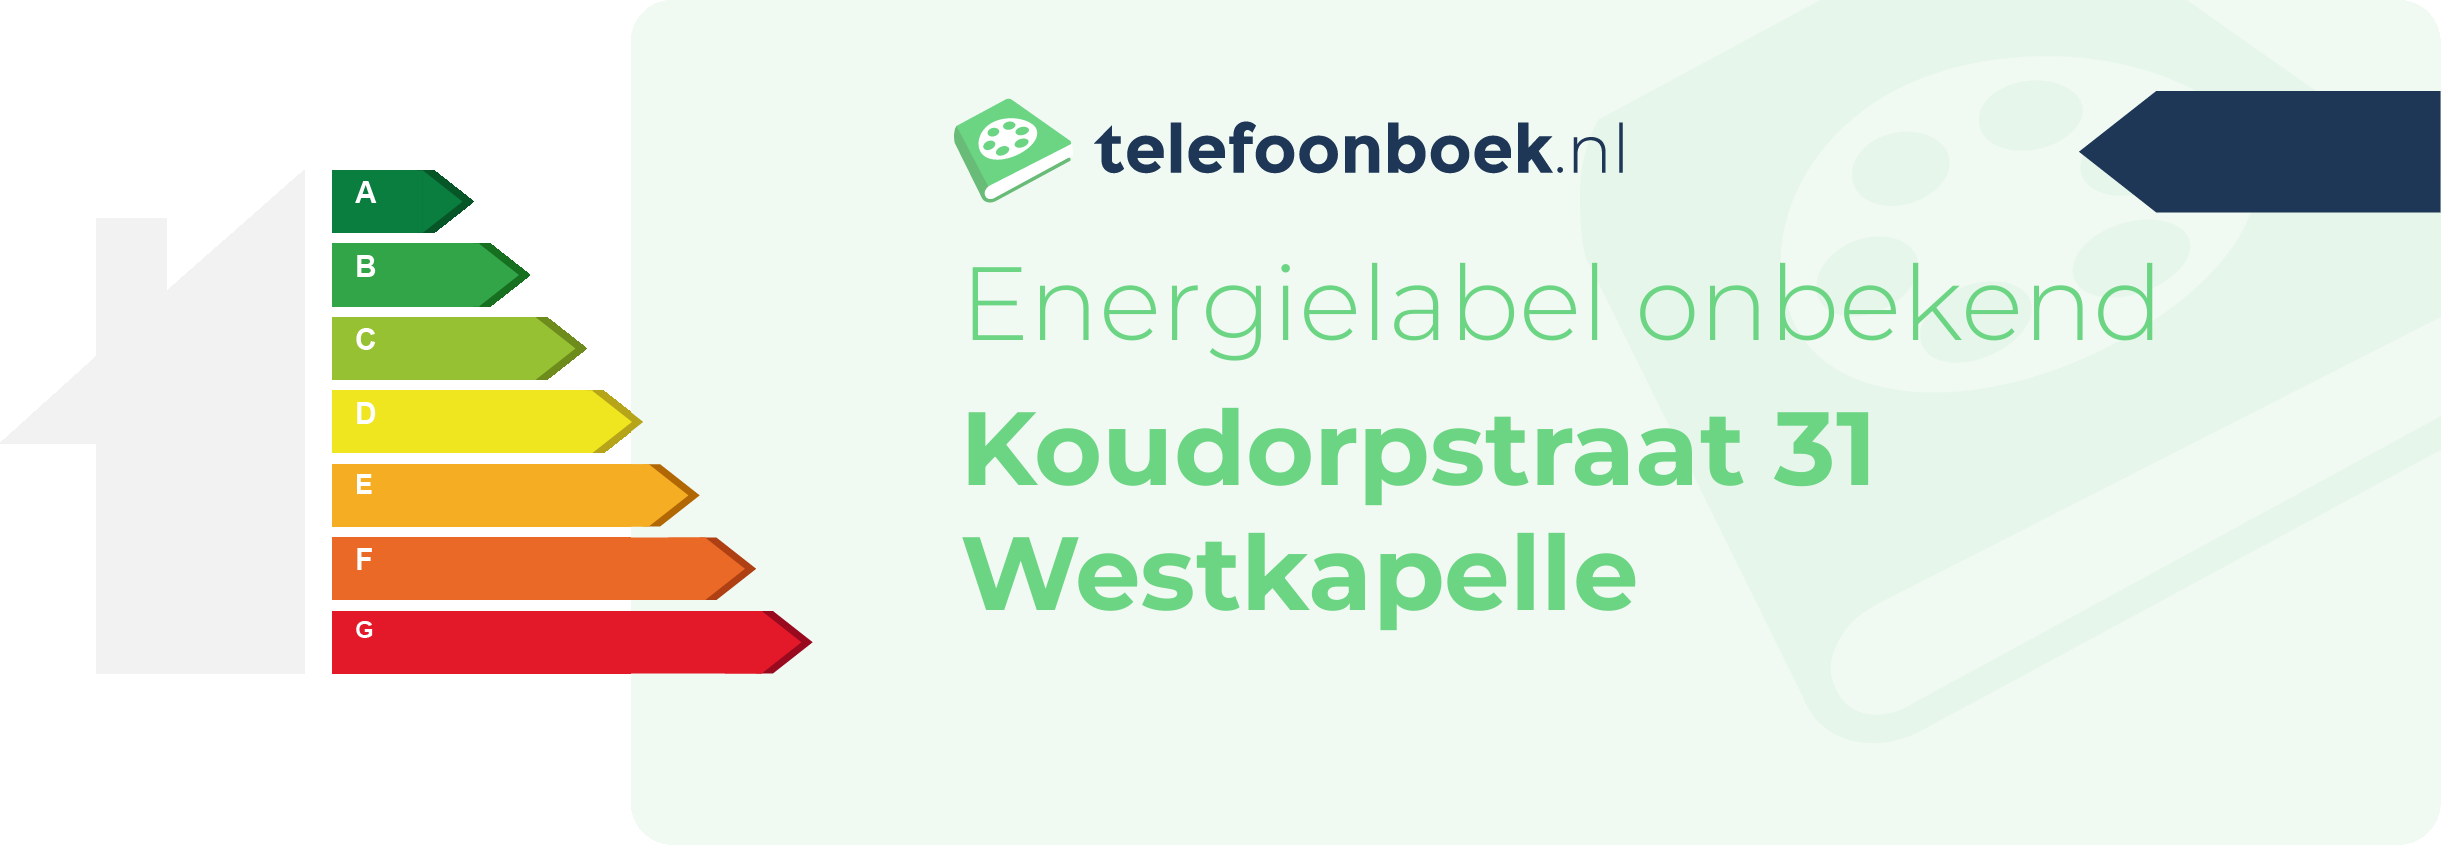 Energielabel Koudorpstraat 31 Westkapelle